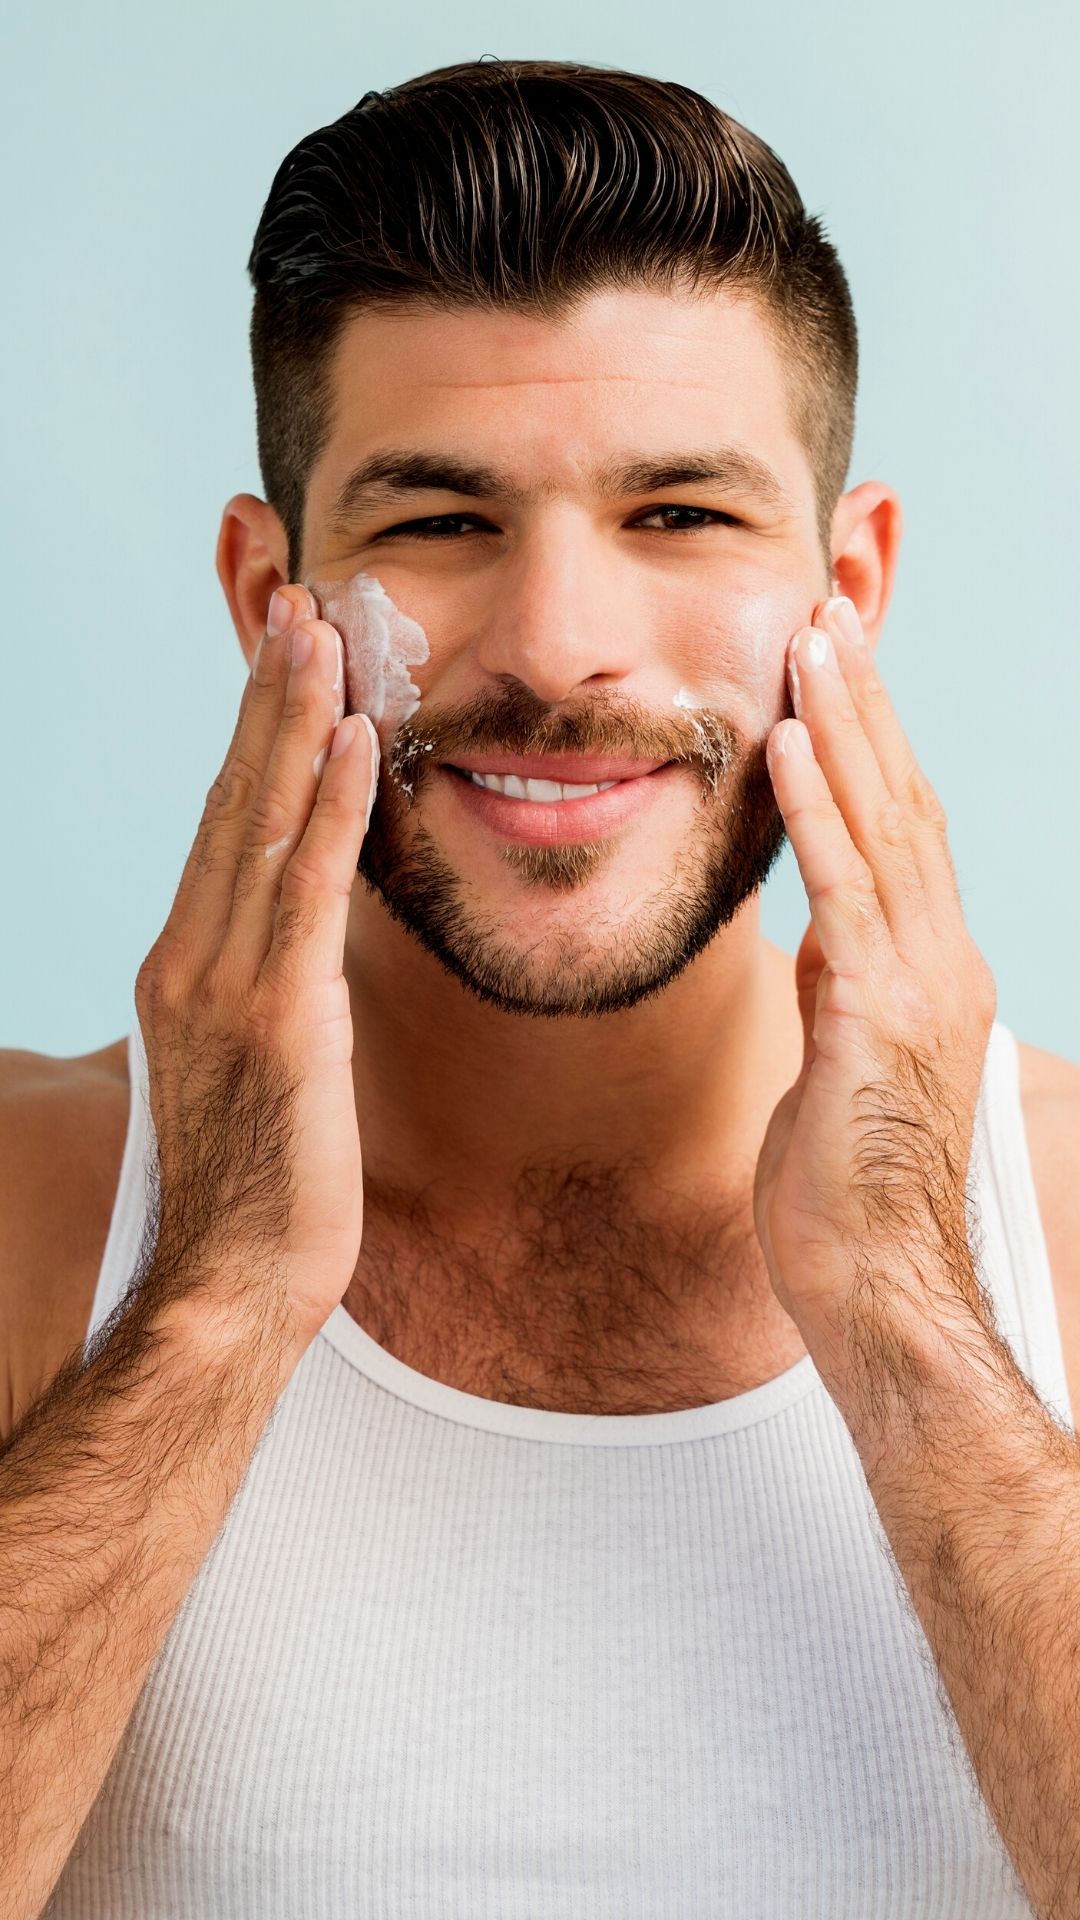 Skincare masculino: quais produtos usar? - Homem No Espelho